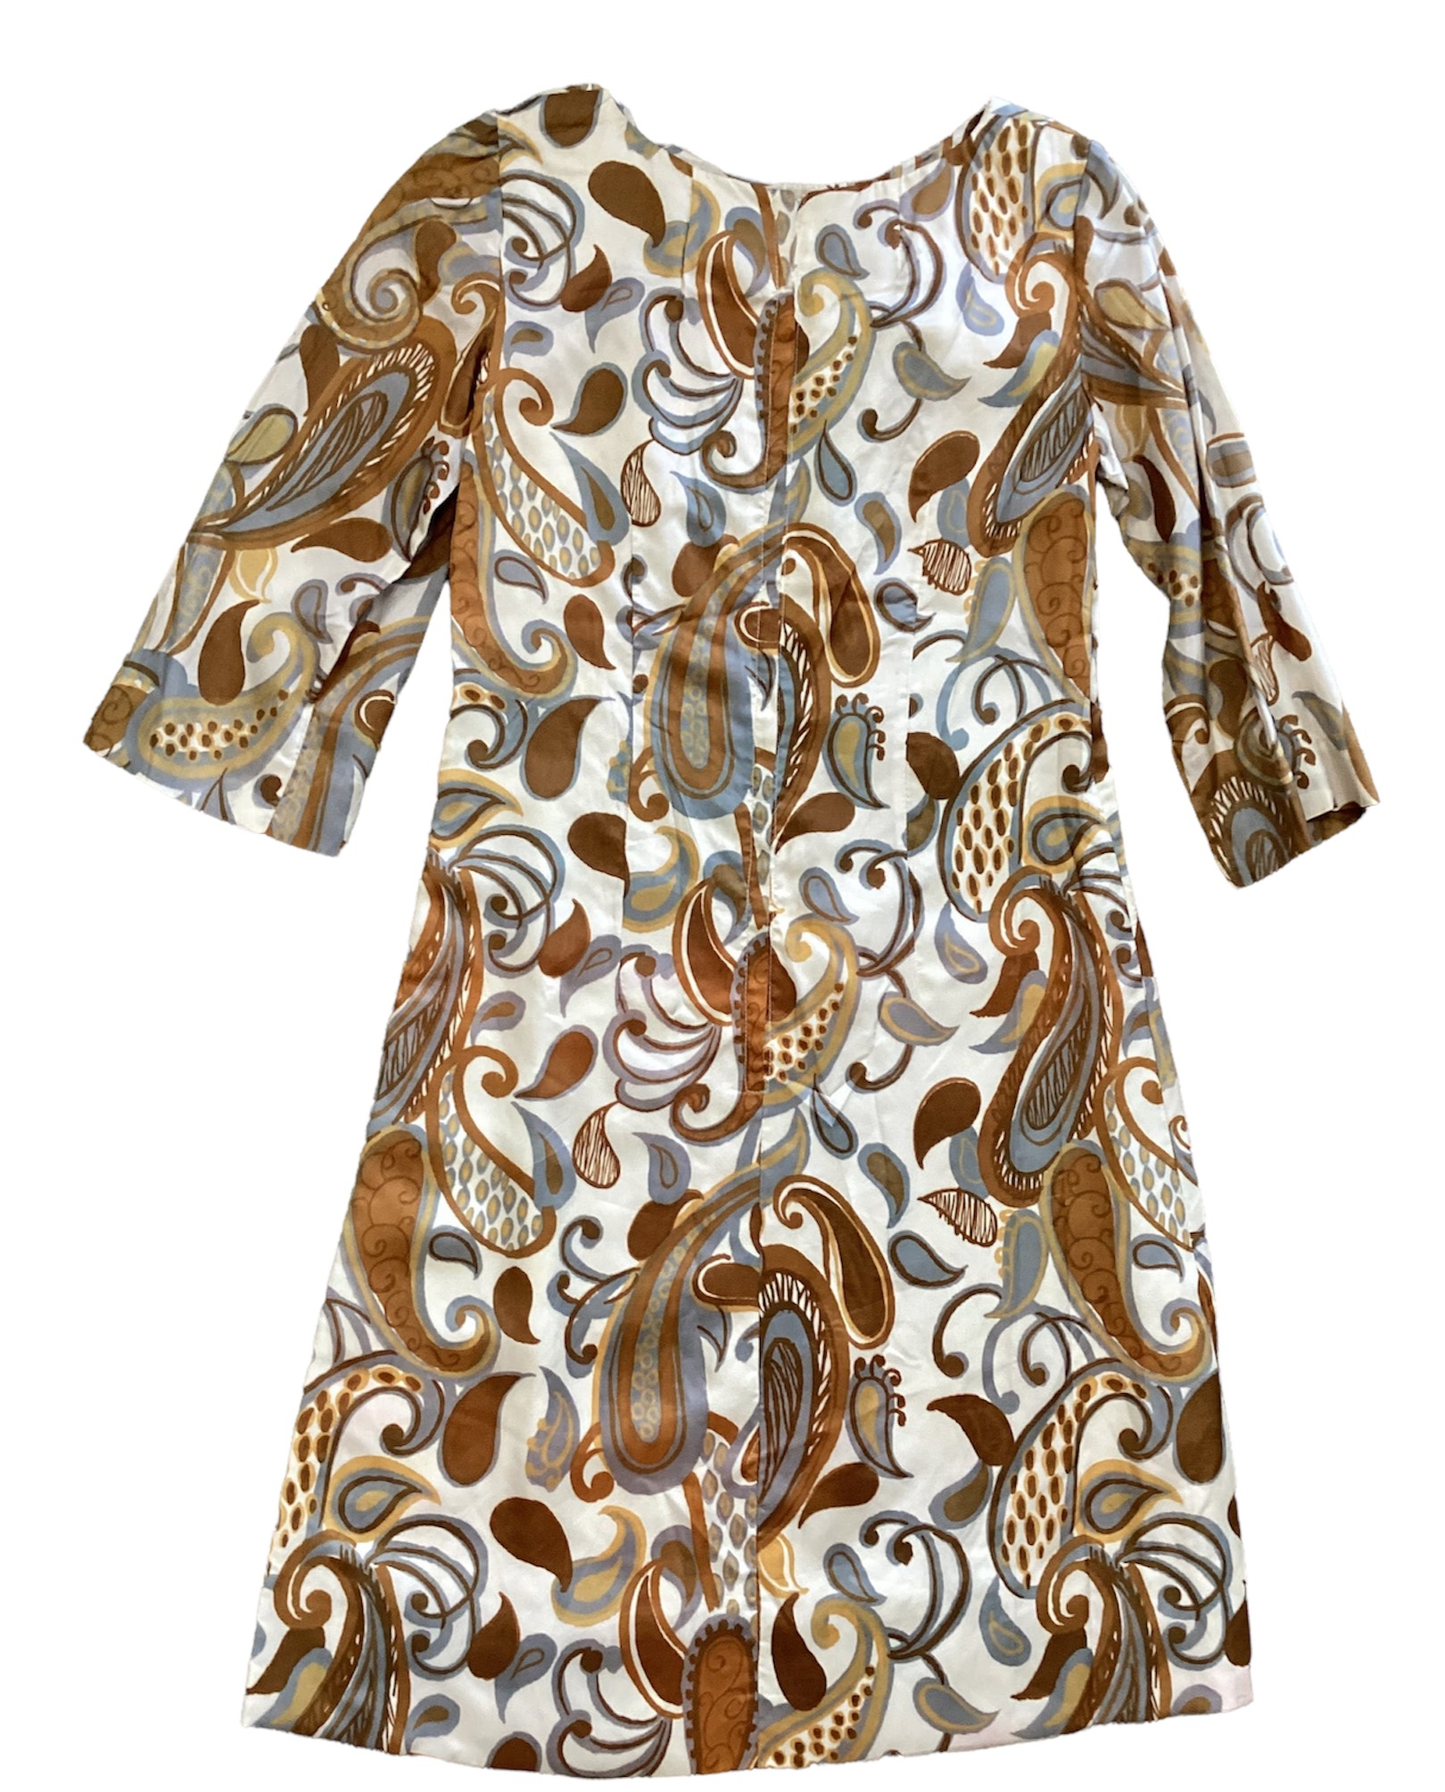 60s Groovy Handmade Satin Dress